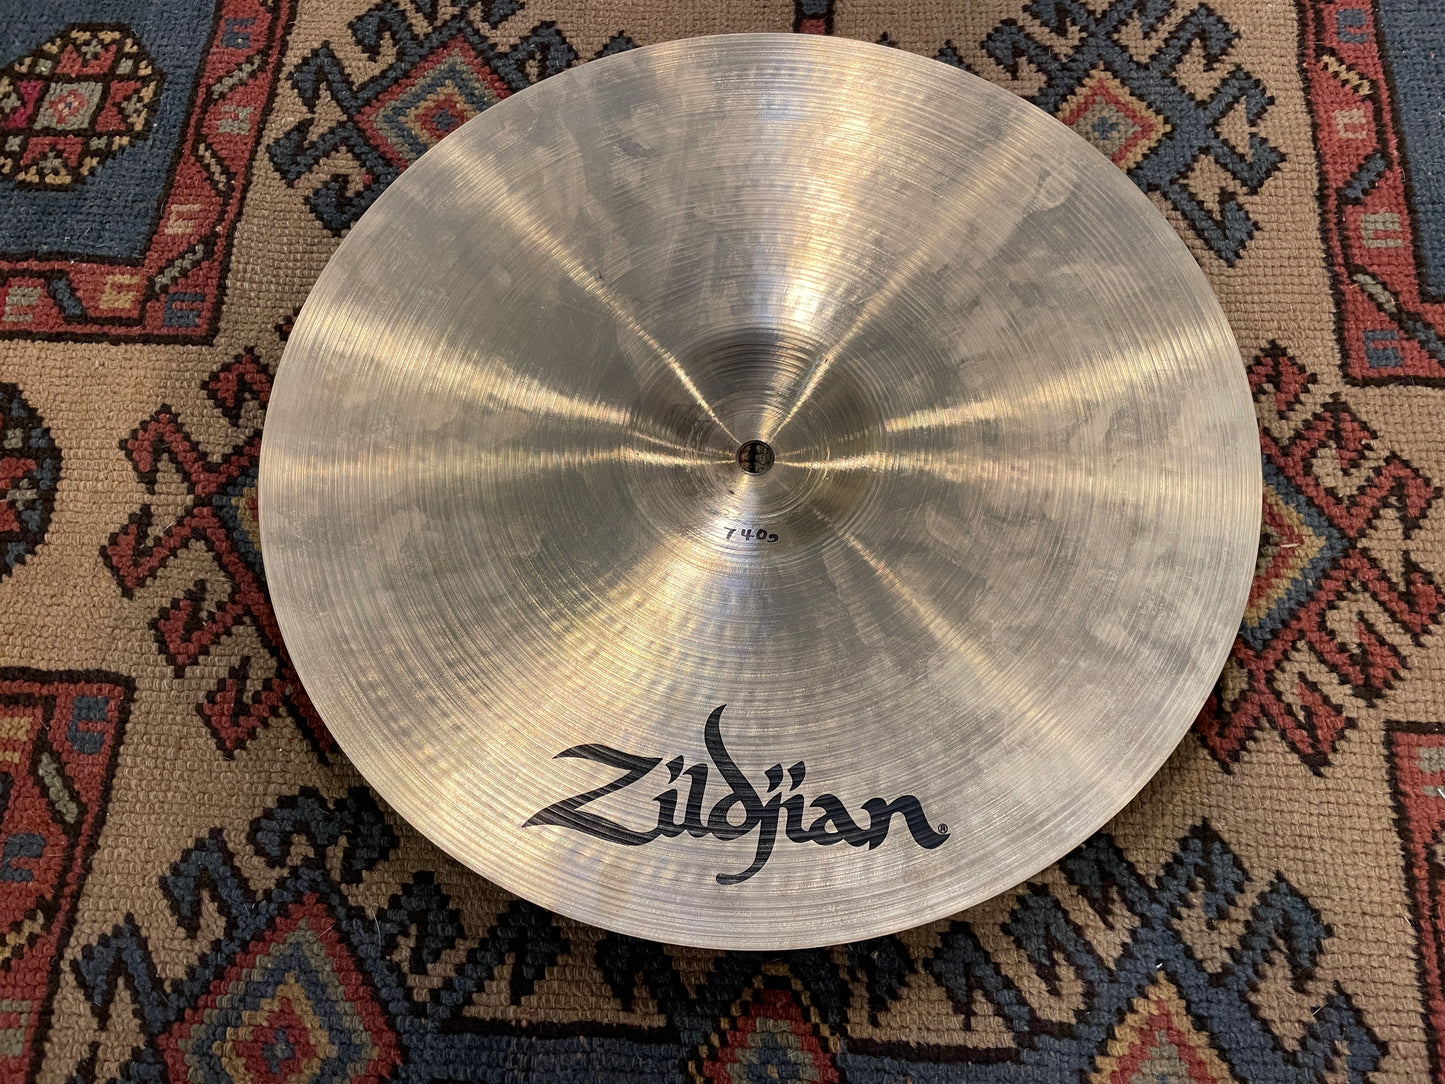 14" Zildjian A Fast Crash Cymbal 740g